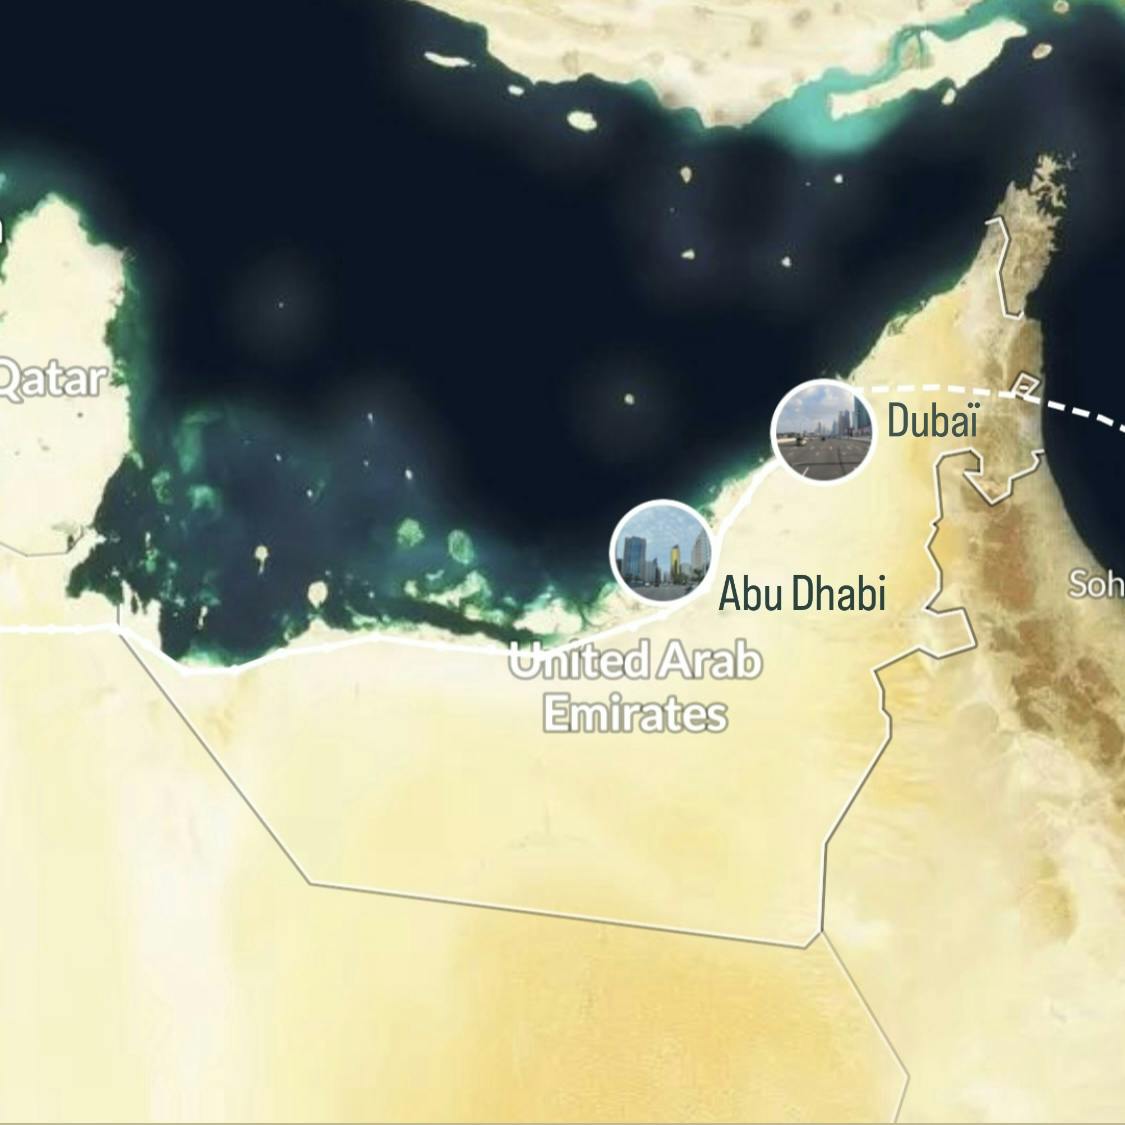 Itinéraire de notre voyage en Arabie Saoudite sur Polarsteps